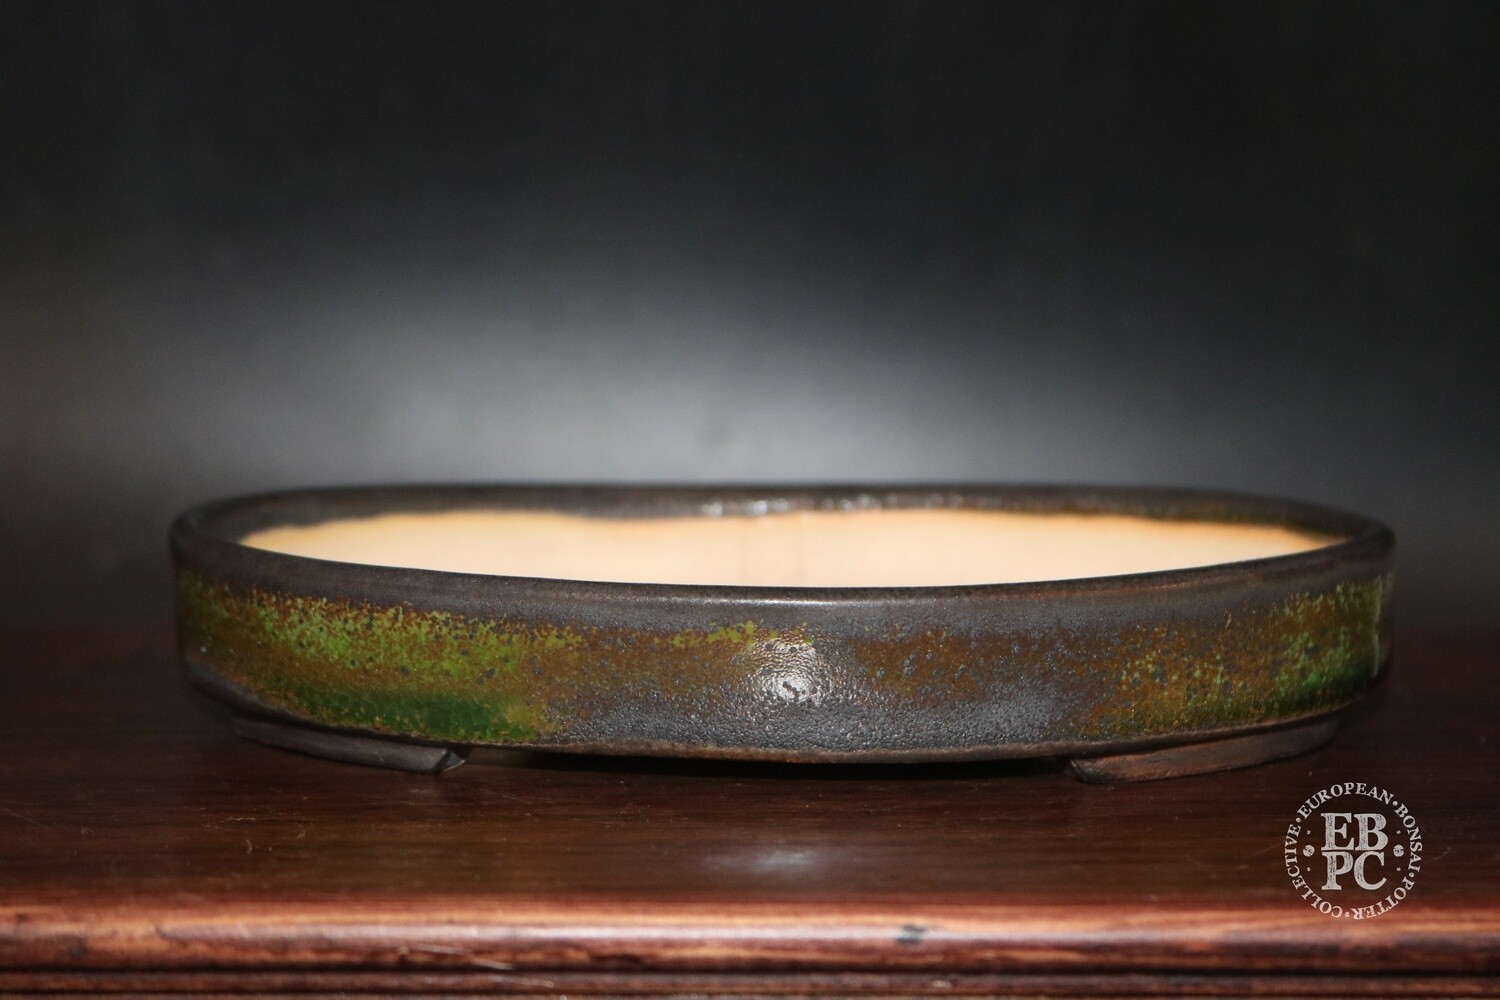 SOLD - Sabine Besnard - 17.7cm; Oval; Glazed, Translucent Green; Browns; Crackle Glaze